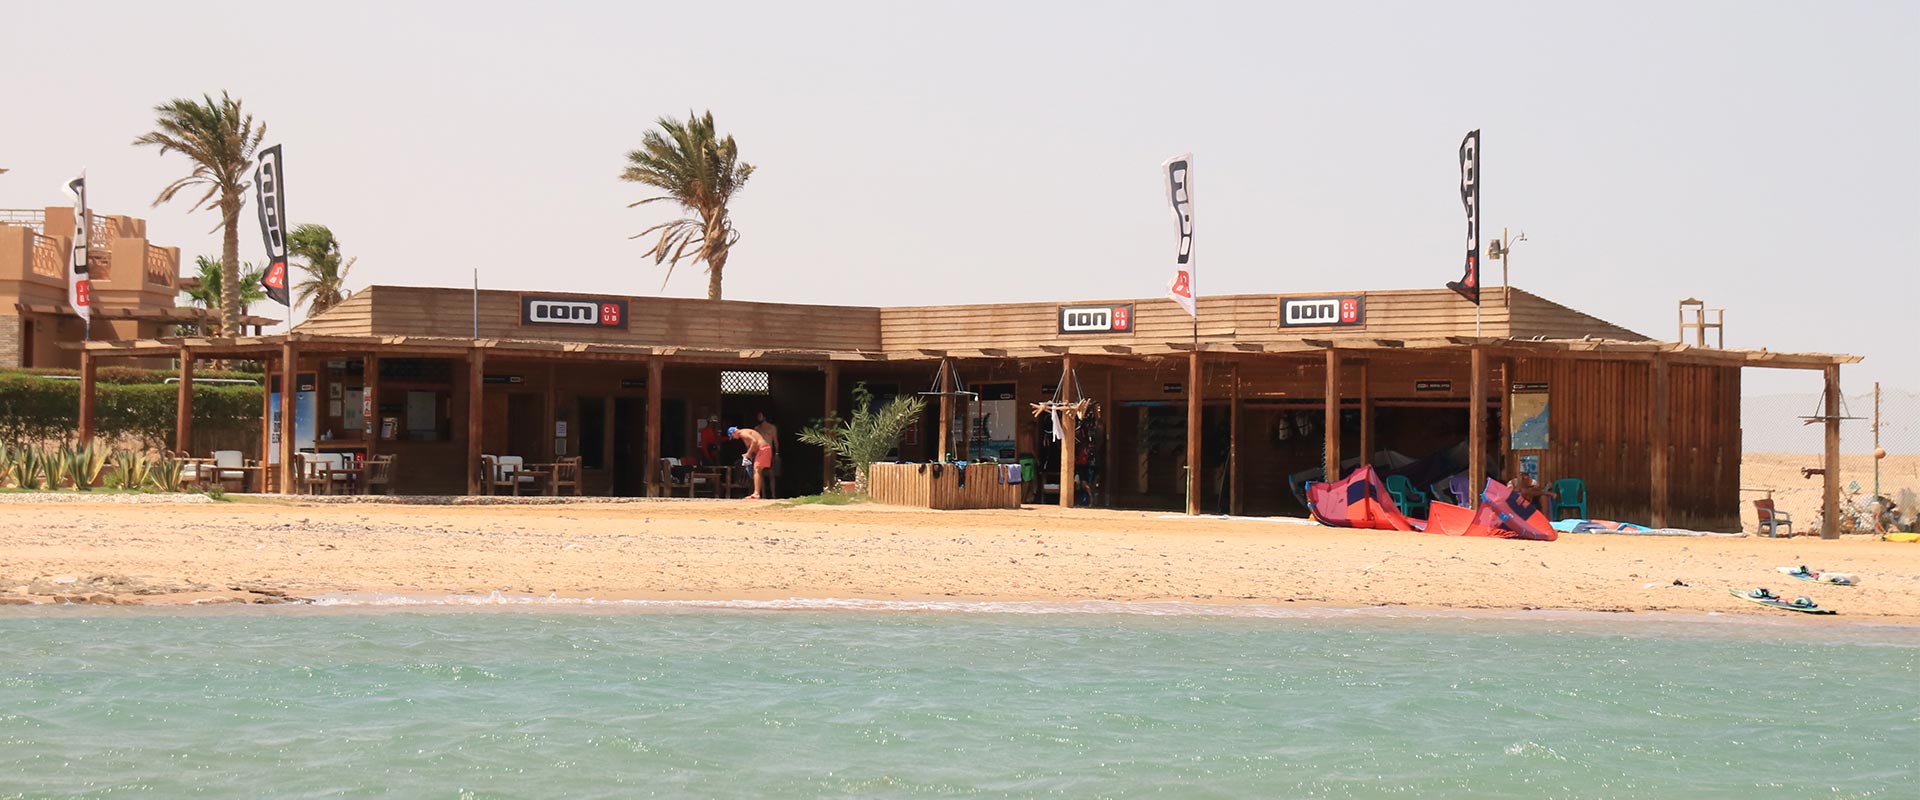 Vue de face du centre de kitesurf Ion Club Safaga en Égypte